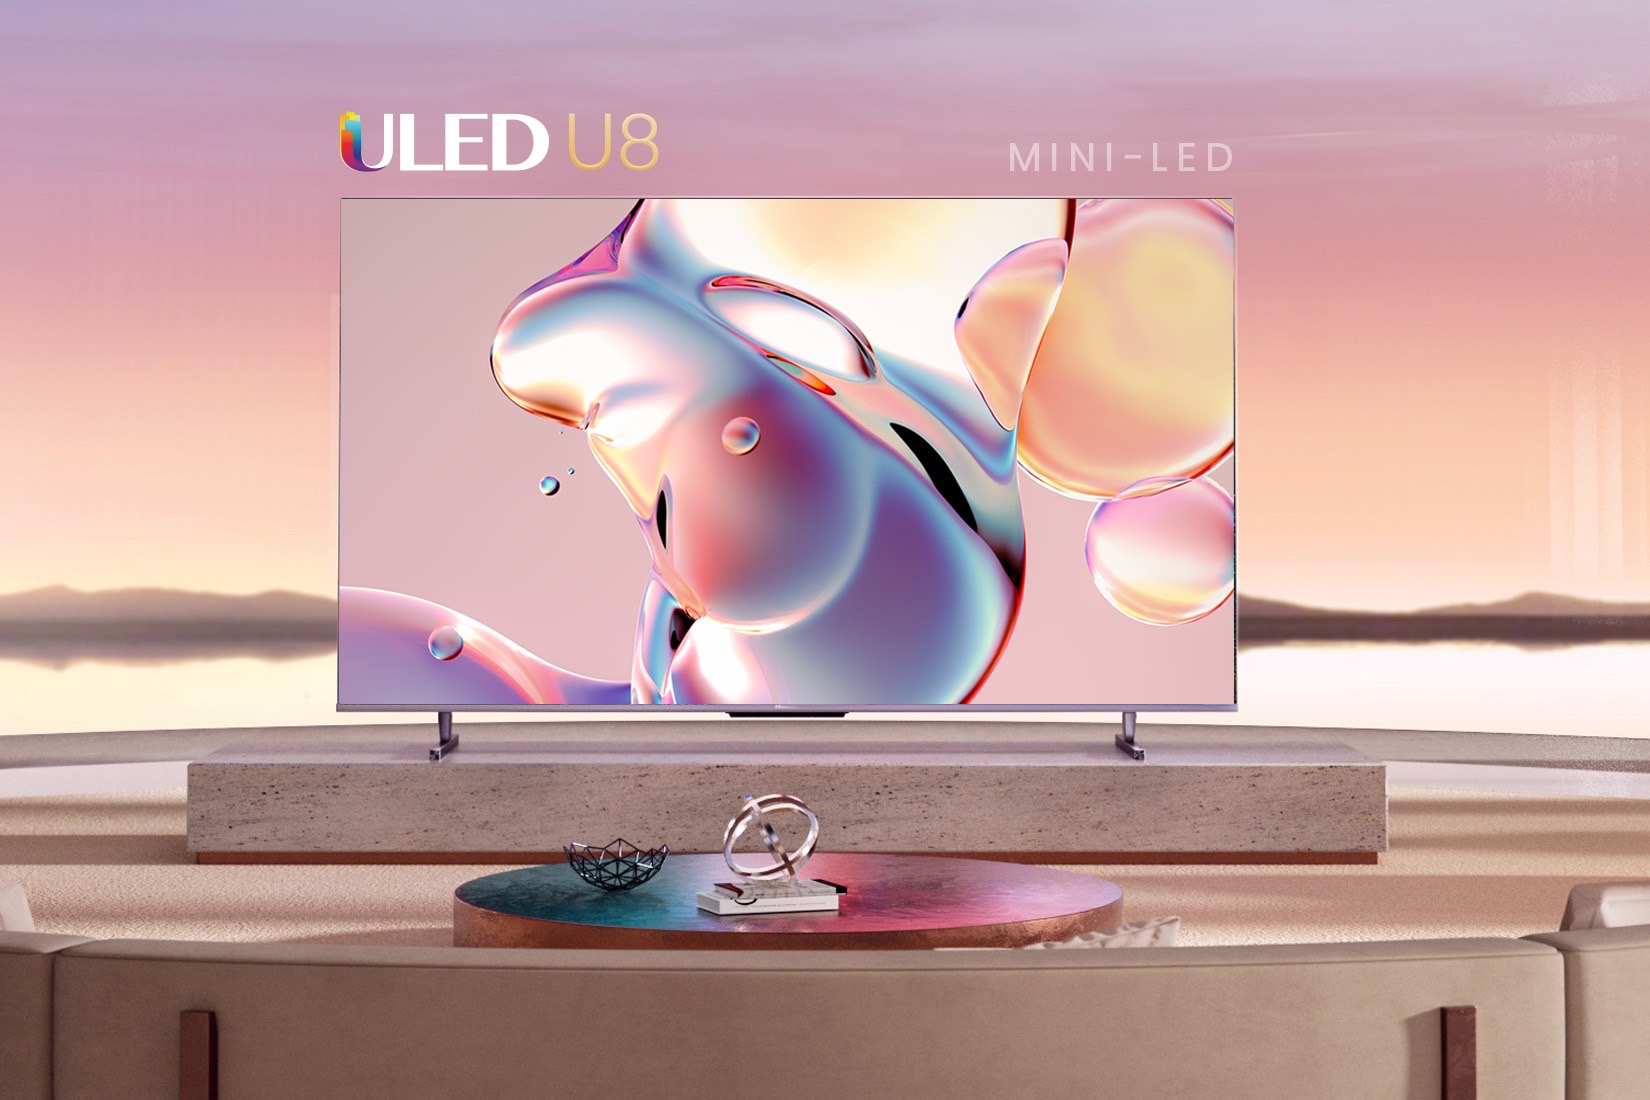 Hisense's mini-LED U6K TV arrives, starting at $500